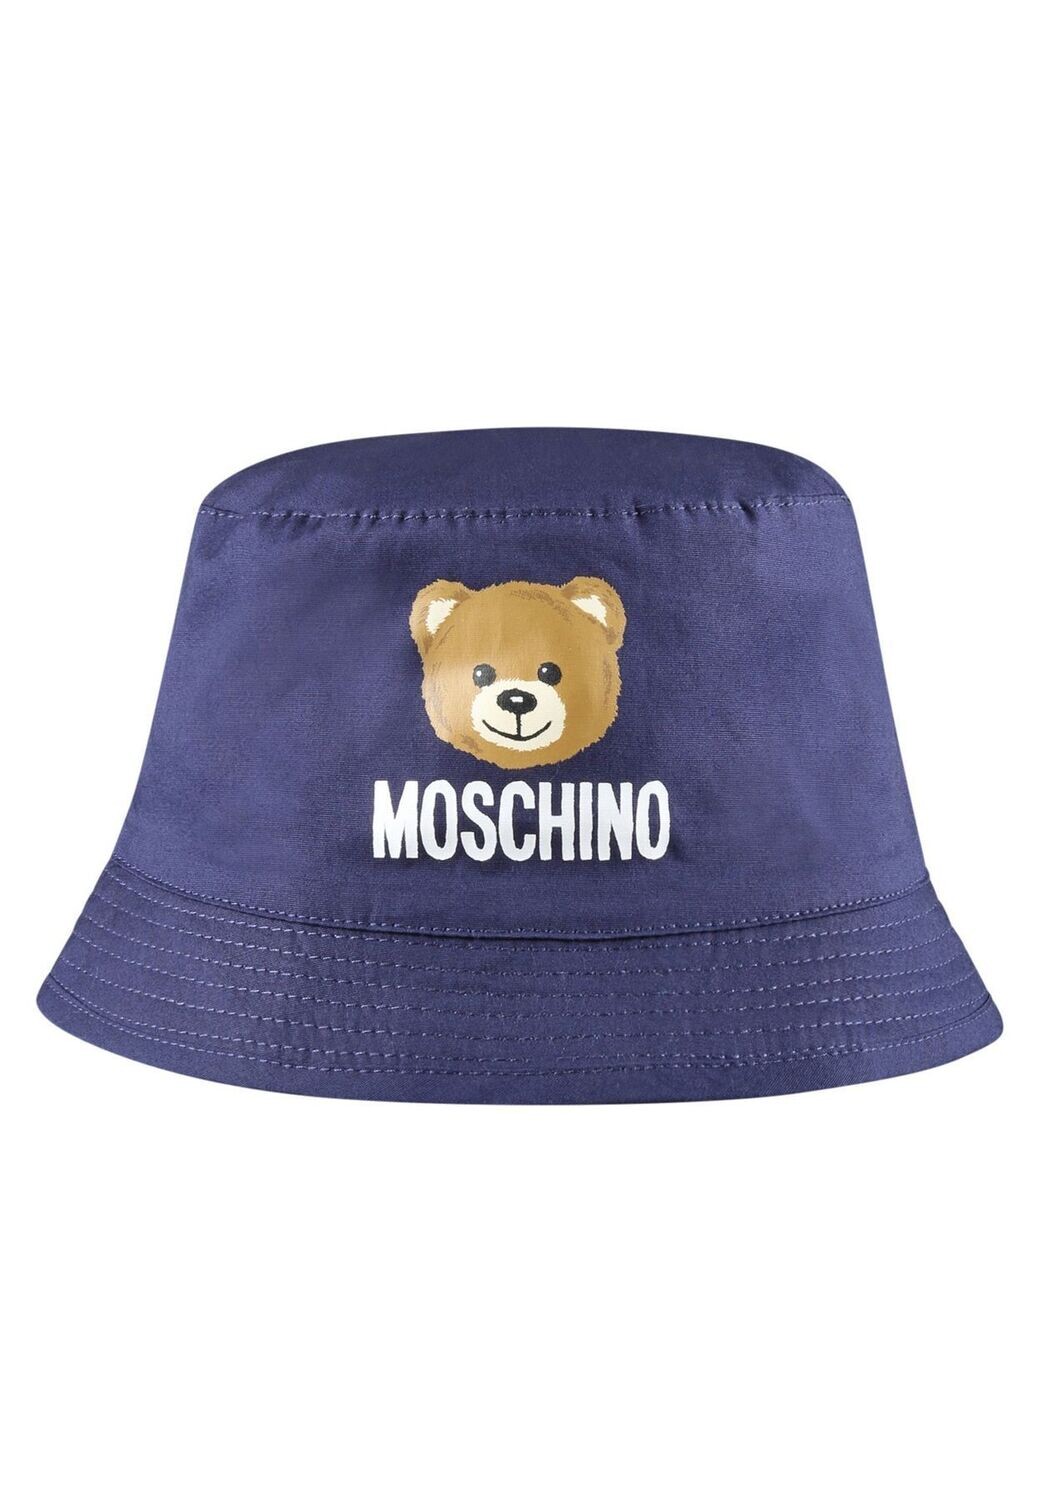 Moschino-cappellino falda blu, size: 48